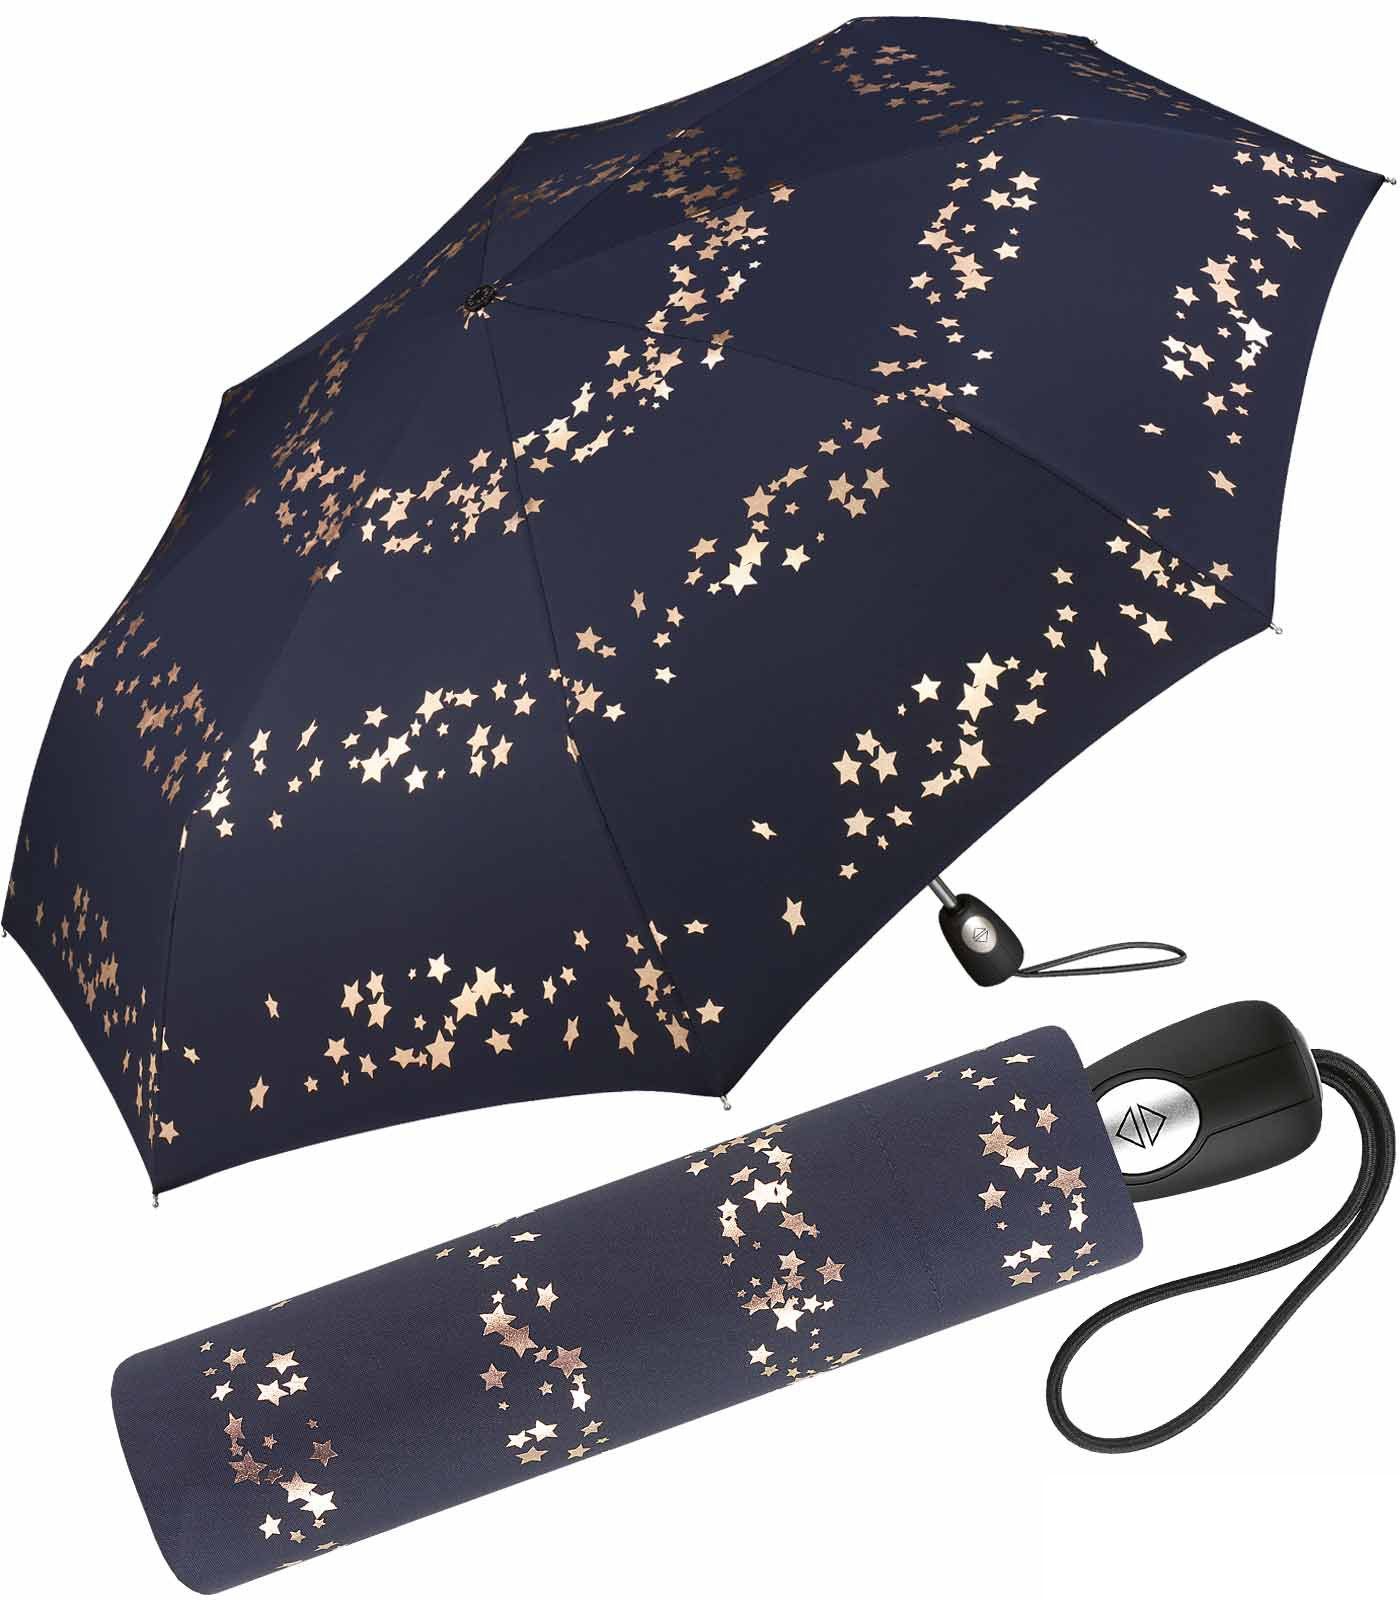 blau-rotgold in Sterne mit Design verspieltem Auf-Zu-Automatik, Taschenregenschirm Cardin Pierre traumhafte schöner Damen-Regenschirm